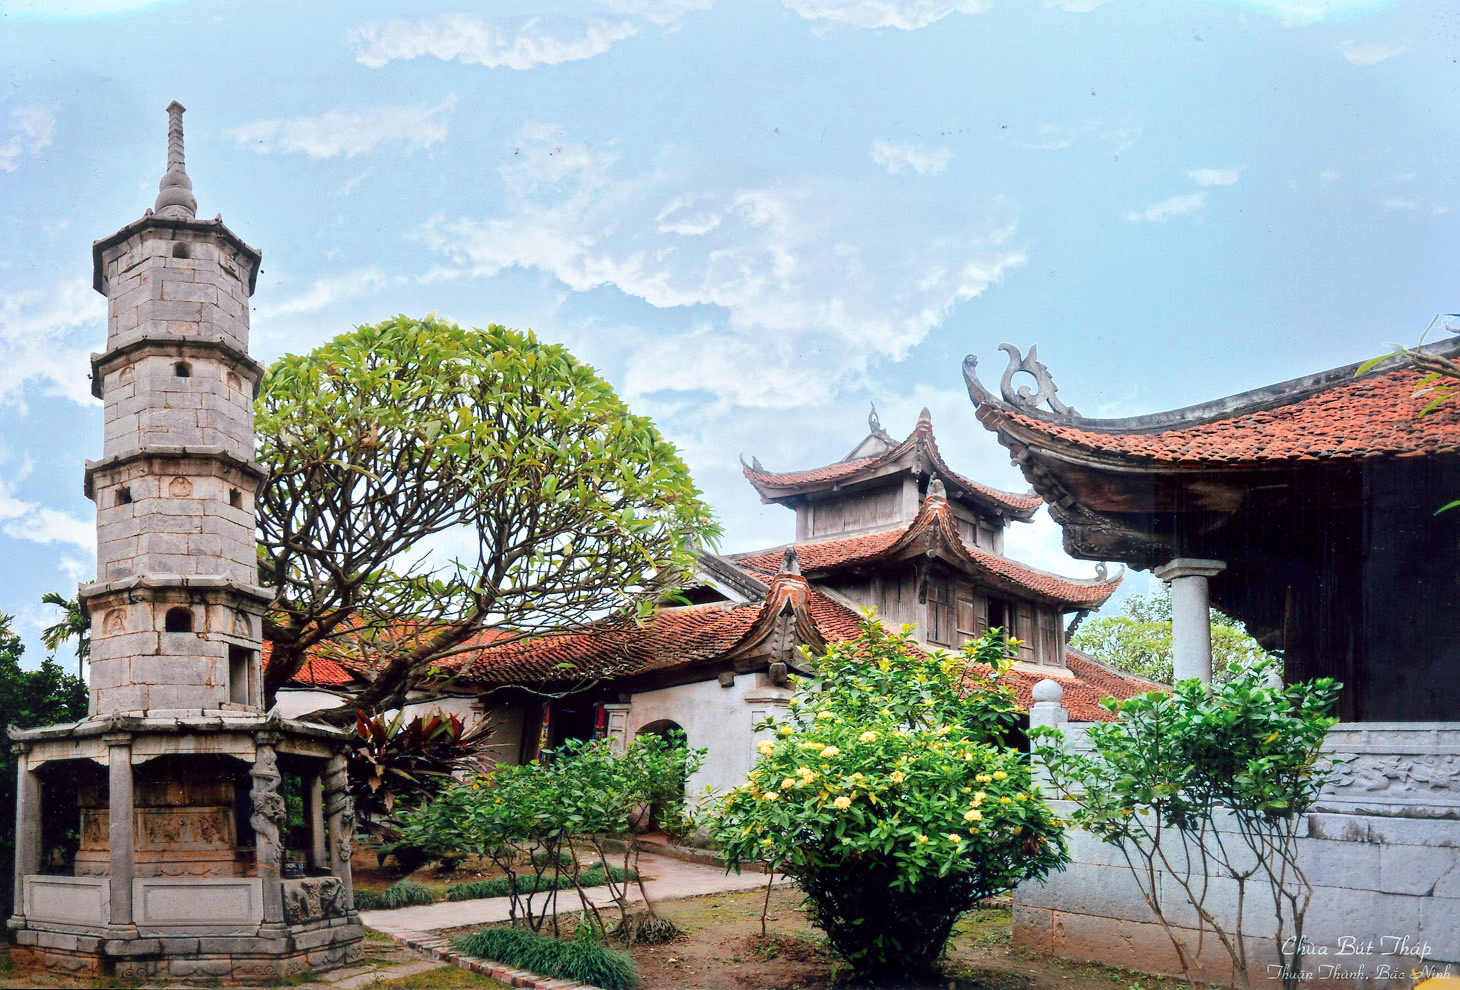 Di tích Bắc Ninh - Với hơn 1.500 địa điểm di tích lịch sử, Bắc Ninh là nơi lý tưởng để khám phá và tìm hiểu về văn hóa và lịch sử Việt Nam. Hãy đến đây để khám phá những công trình kiến trúc độc đáo, những kho báu về văn hóa và những câu chuyện lịch sử thú vị.